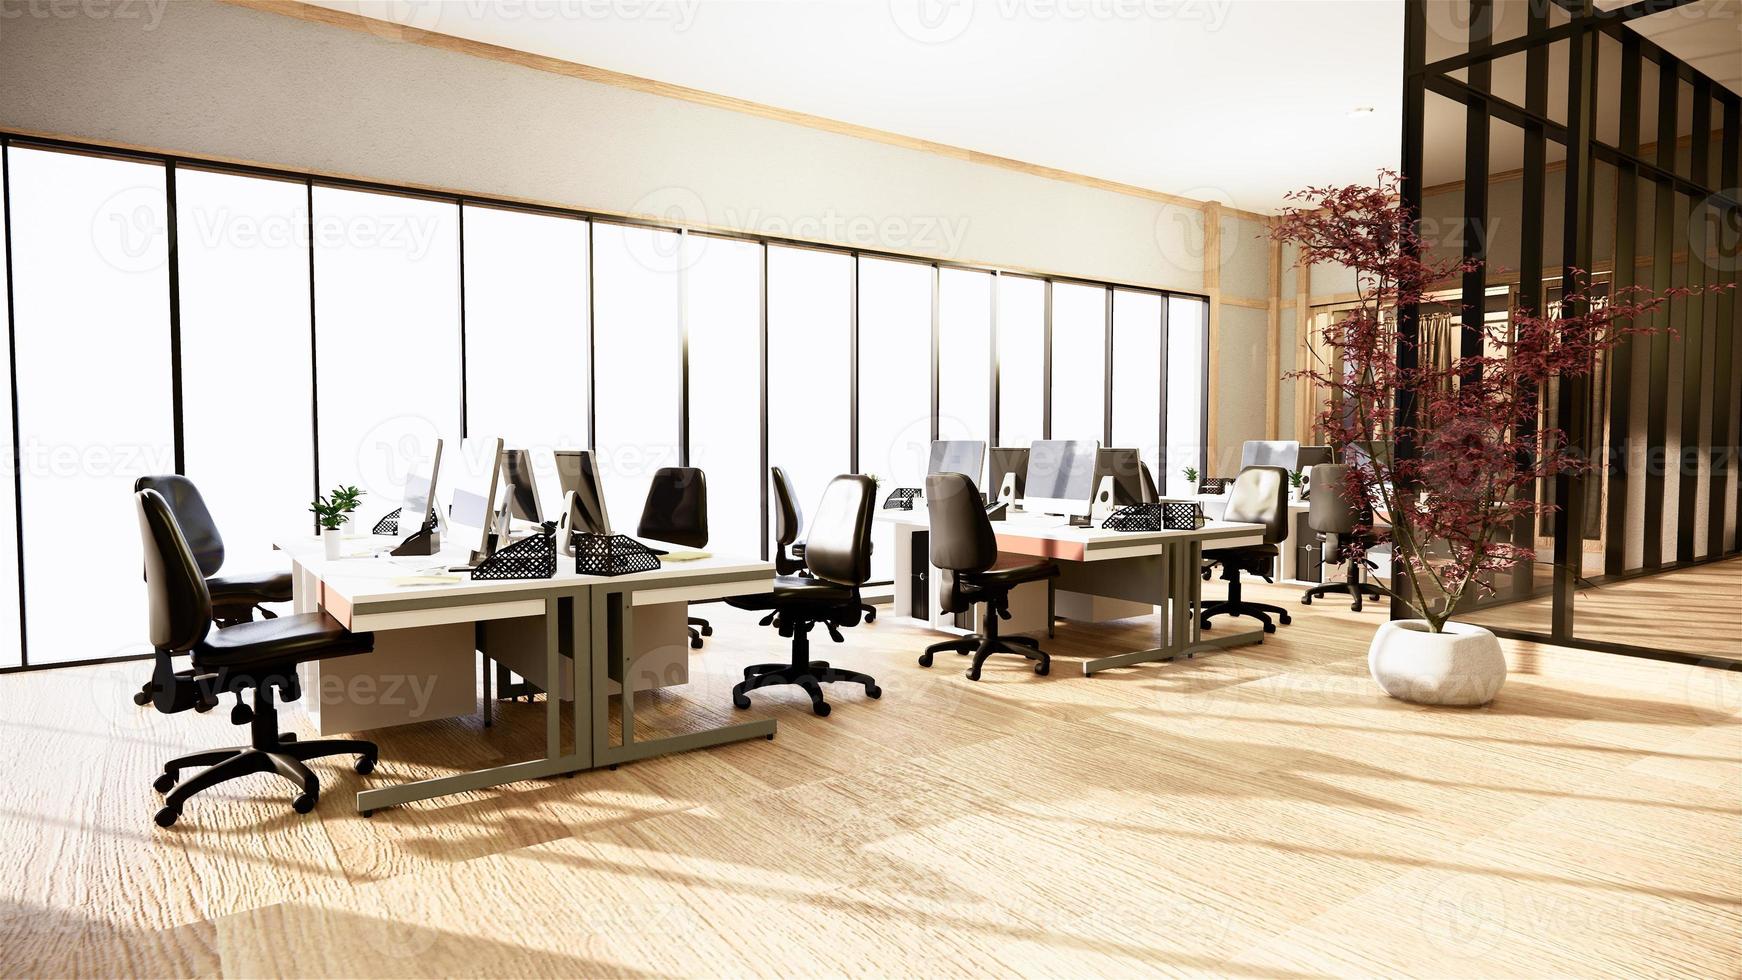 Bürogeschäft - schöner japanischer Besprechungsraum und Konferenztisch im modernen Stil. 3D-Rendering foto